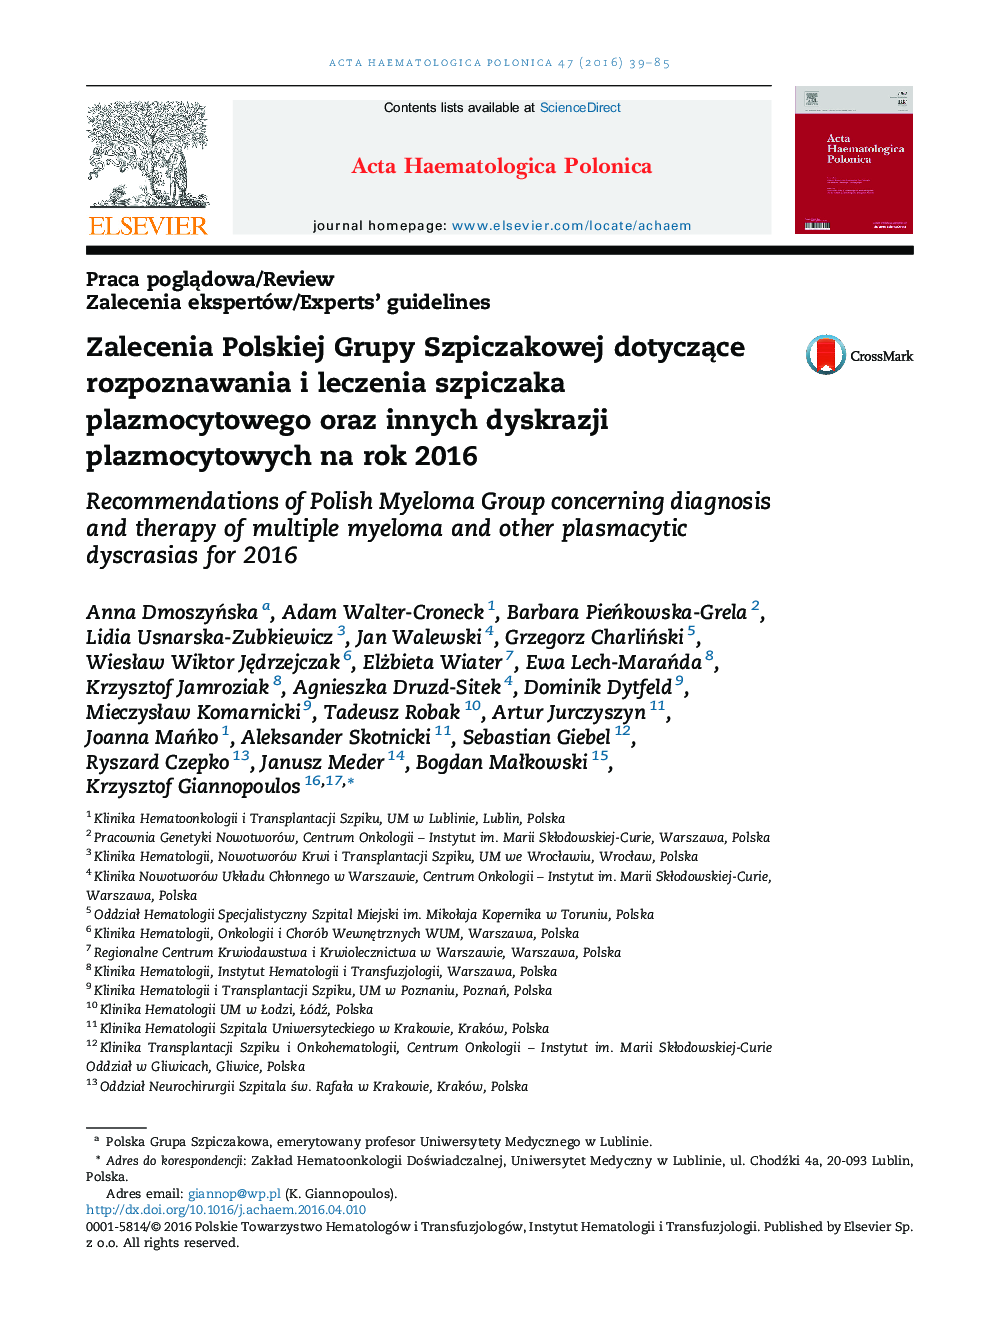 توصیه هایی از گروه لهستانی میلوم در مورد تشخیص و درمان میلوموم پلاسمایی و سایر اختلالات پلاسموسیتی در سال 2016 